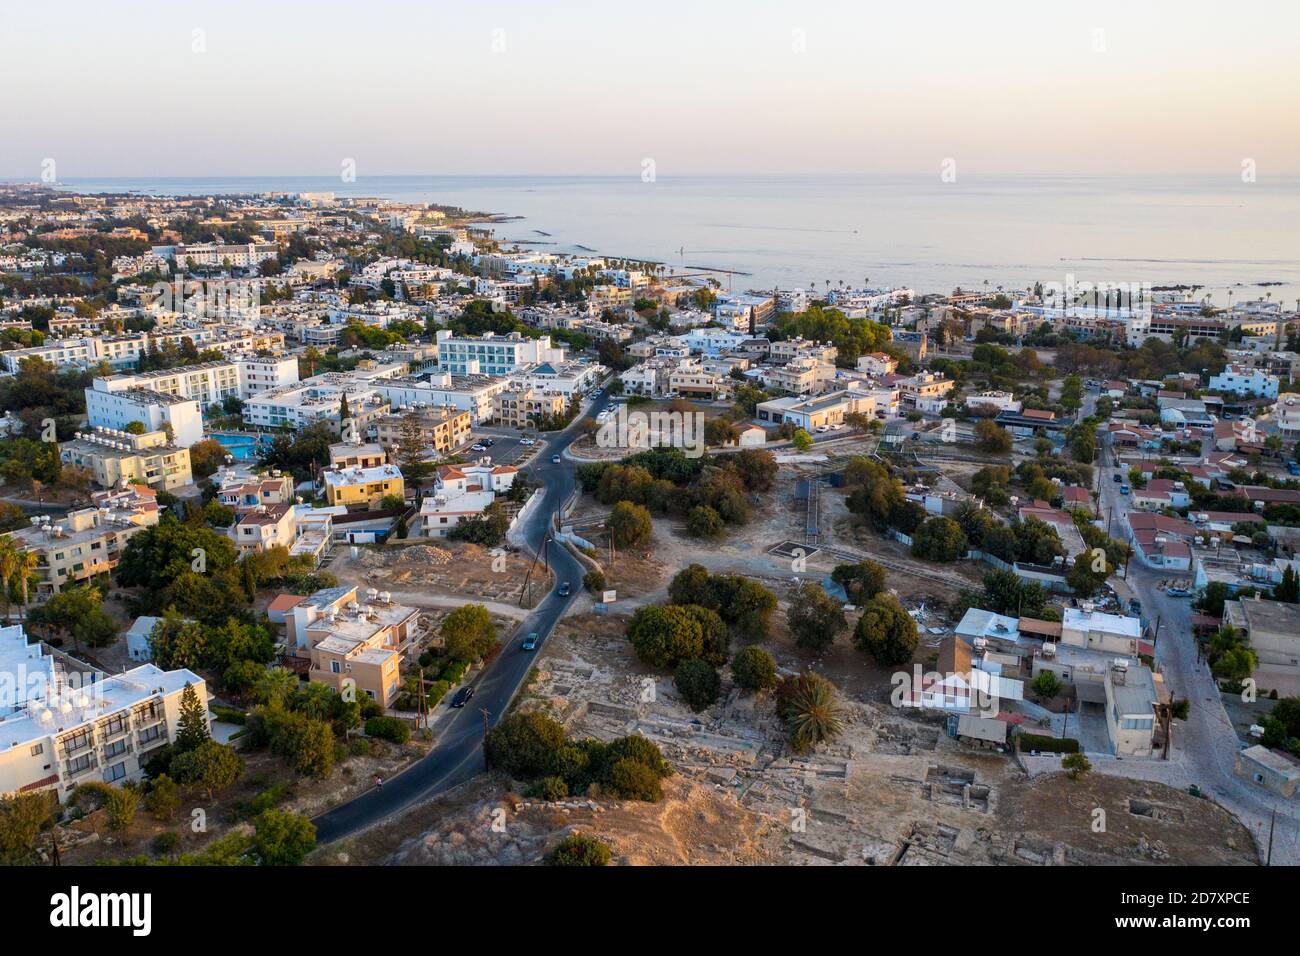 Vista aérea de Kato Paphos y la zona del puerto de Paphos, Chipre. Foto de stock